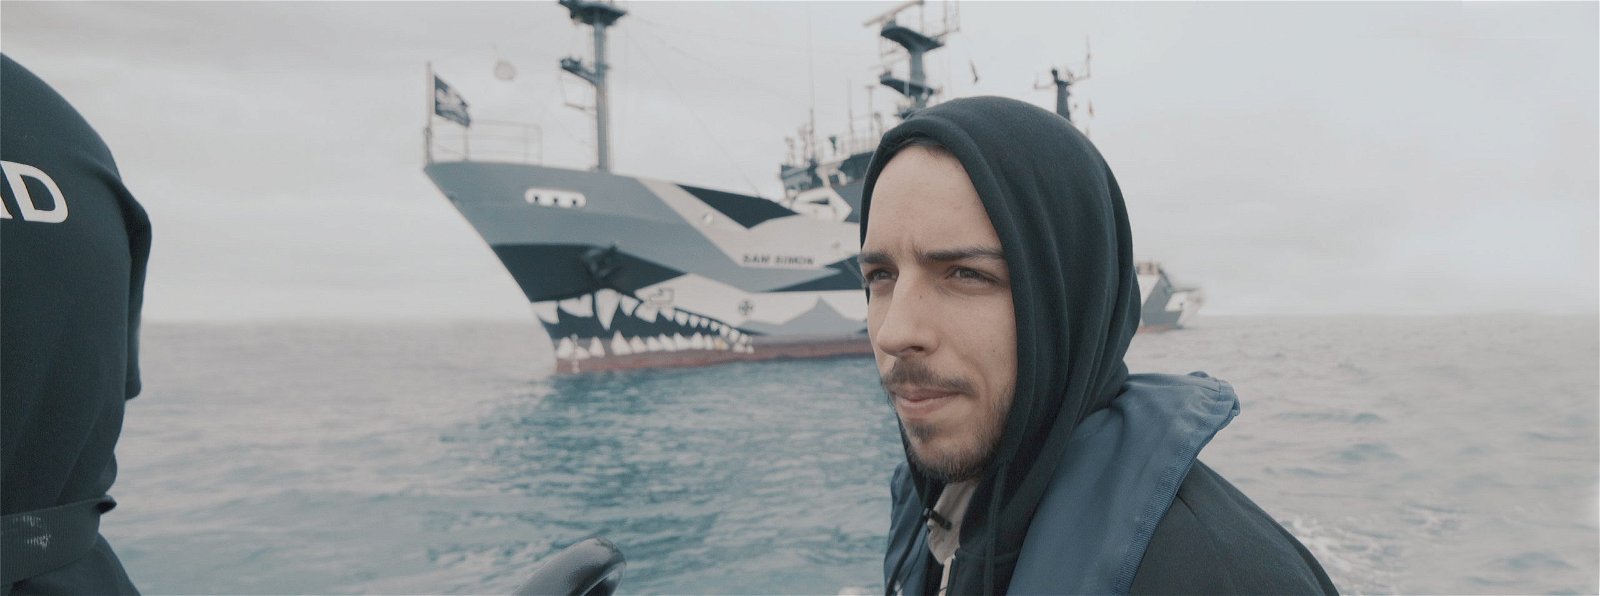 Ali Tabrizi on a boat